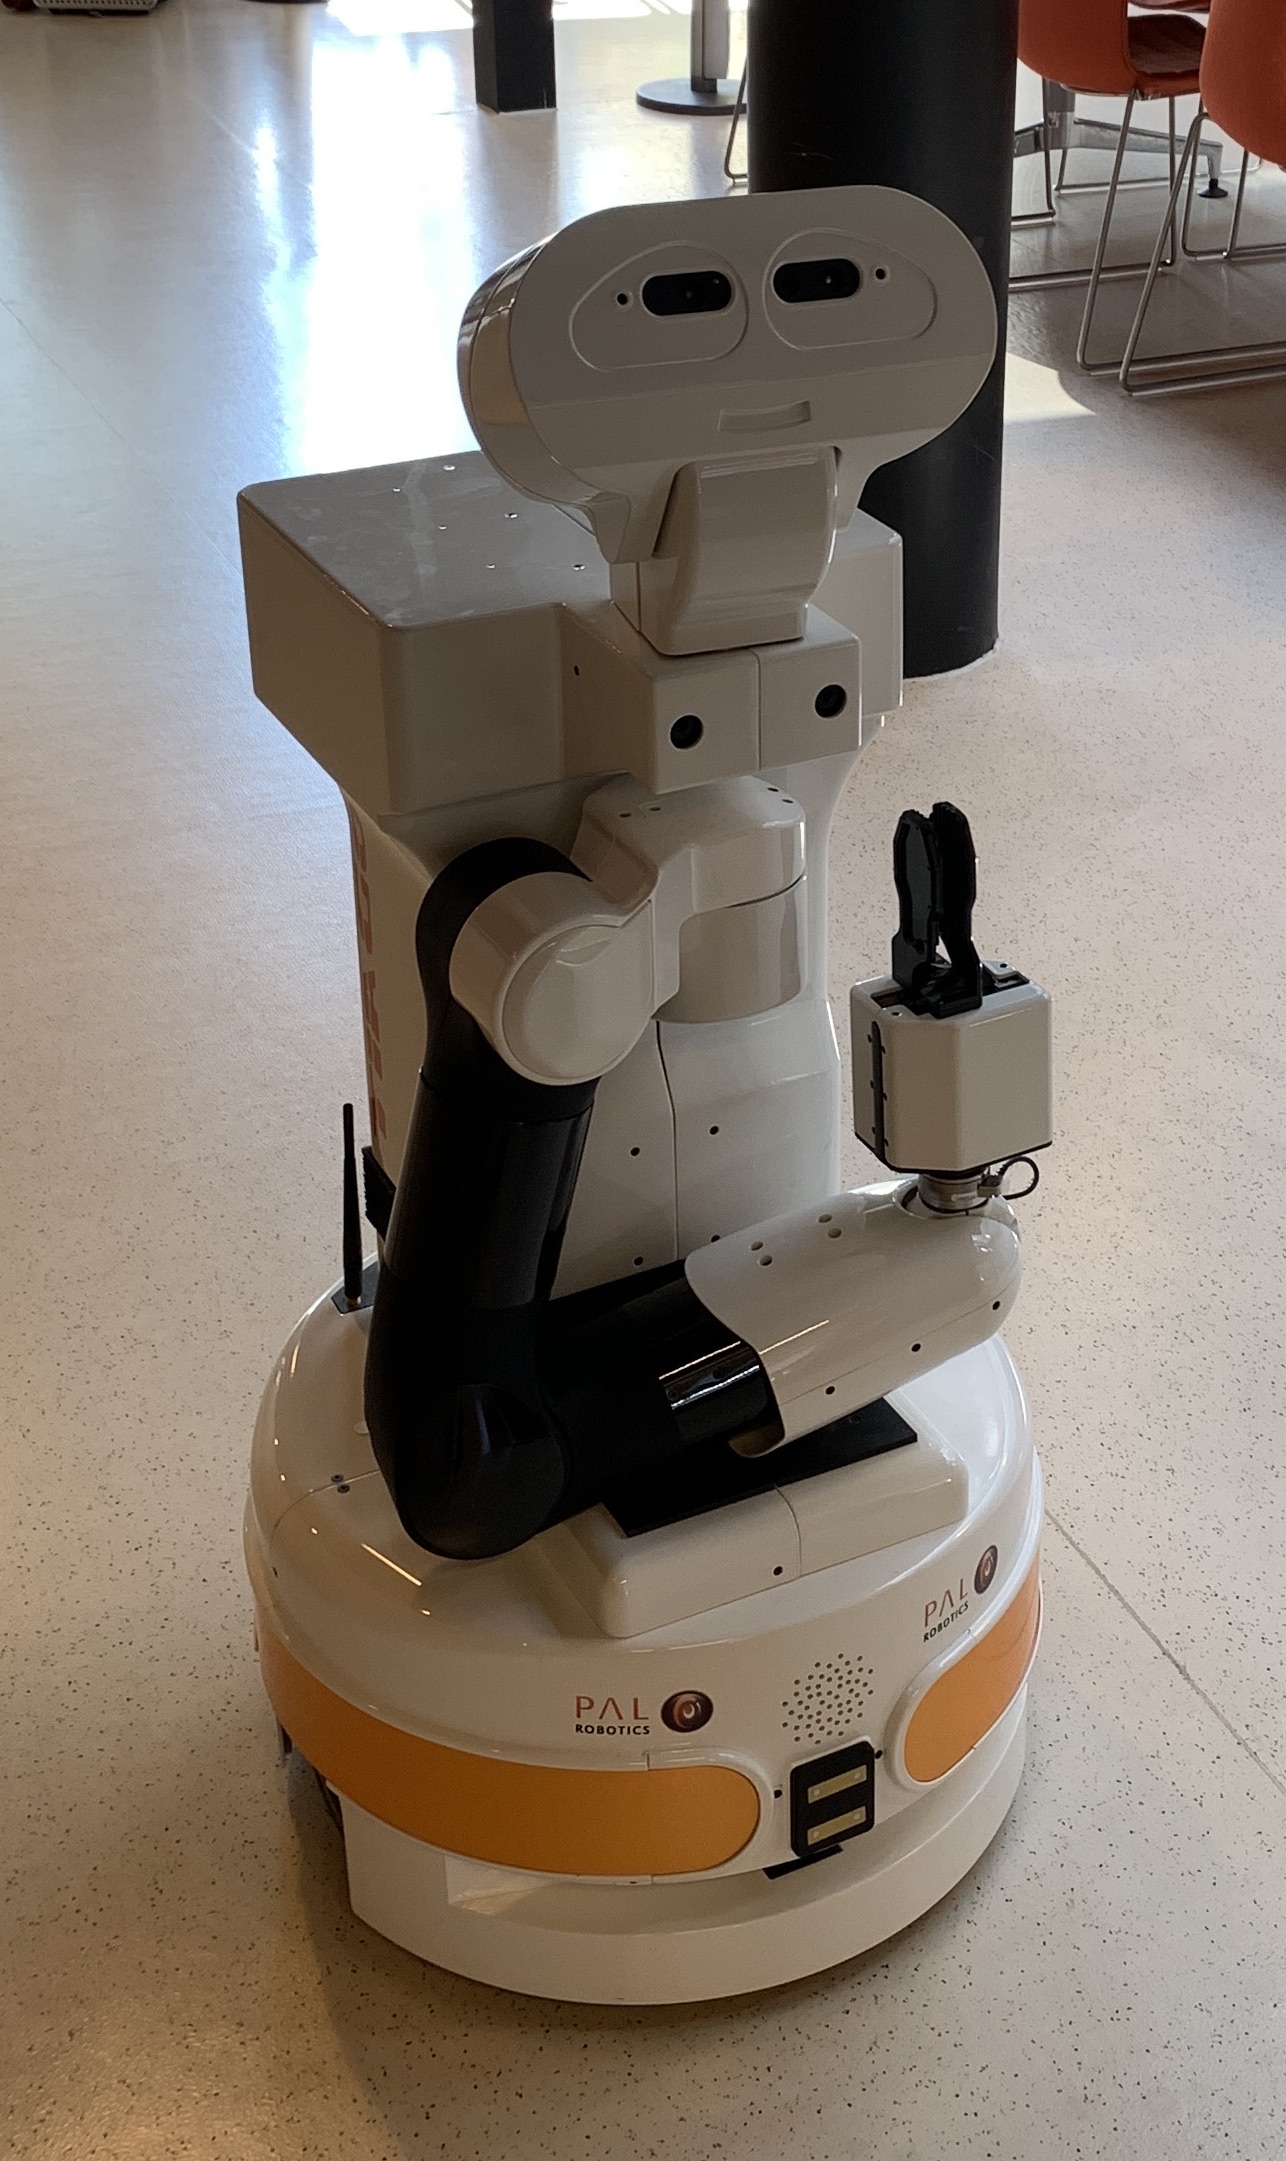 TIAGo from Pal Robotics (Photo: Vegard Søyseth)